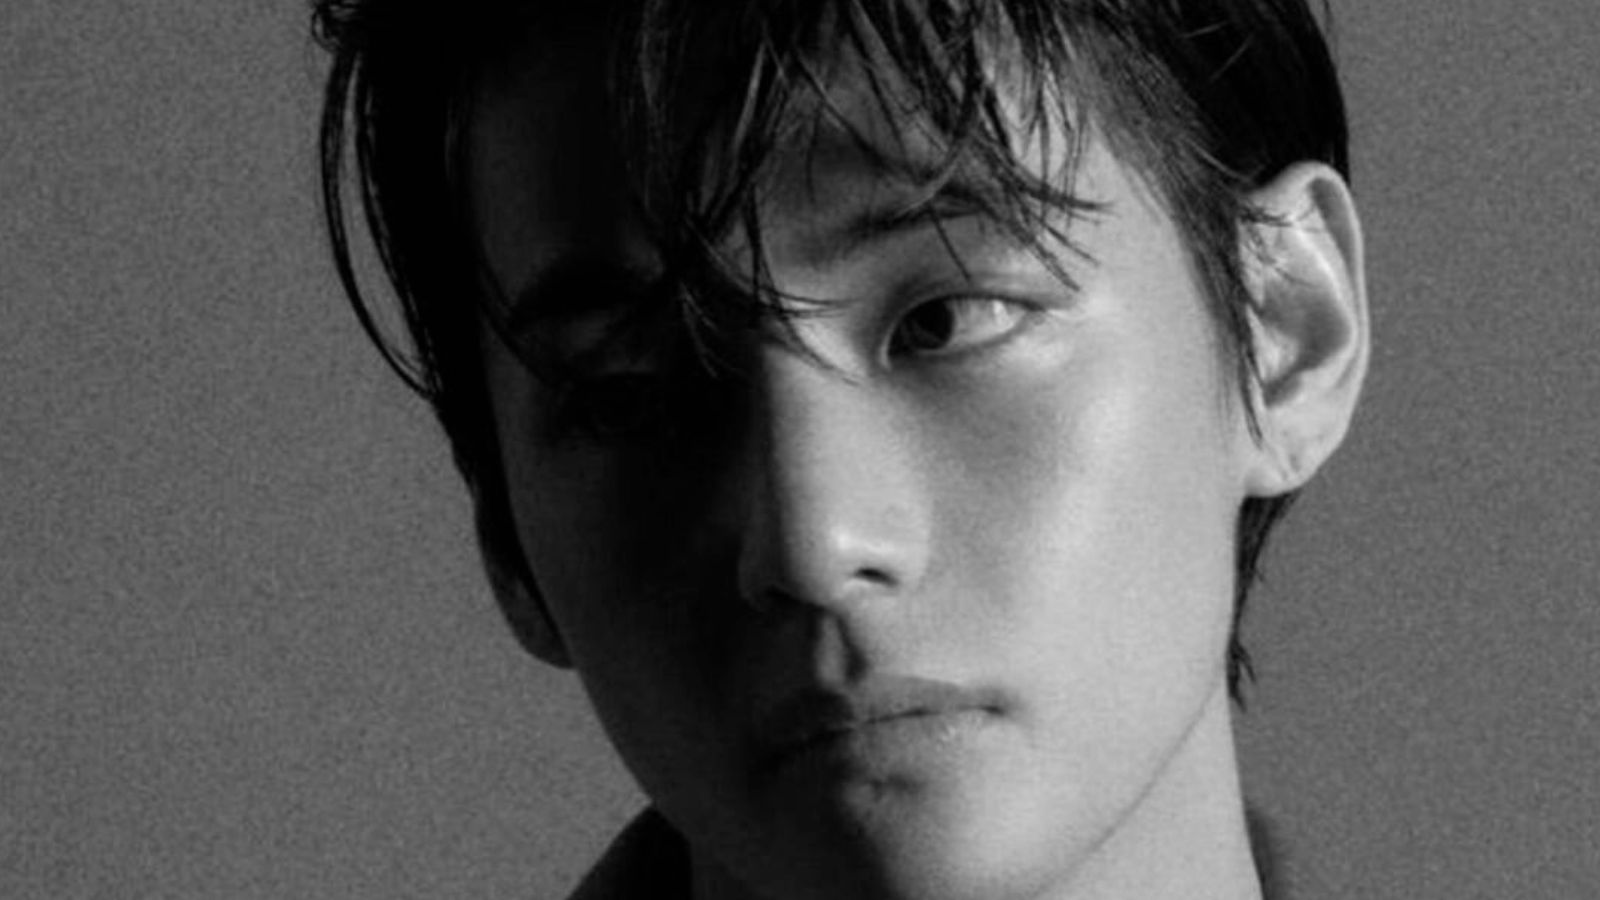 BTS’ V says ‘I am okay’ after police arrest stalker who followed him into elevator | Music News